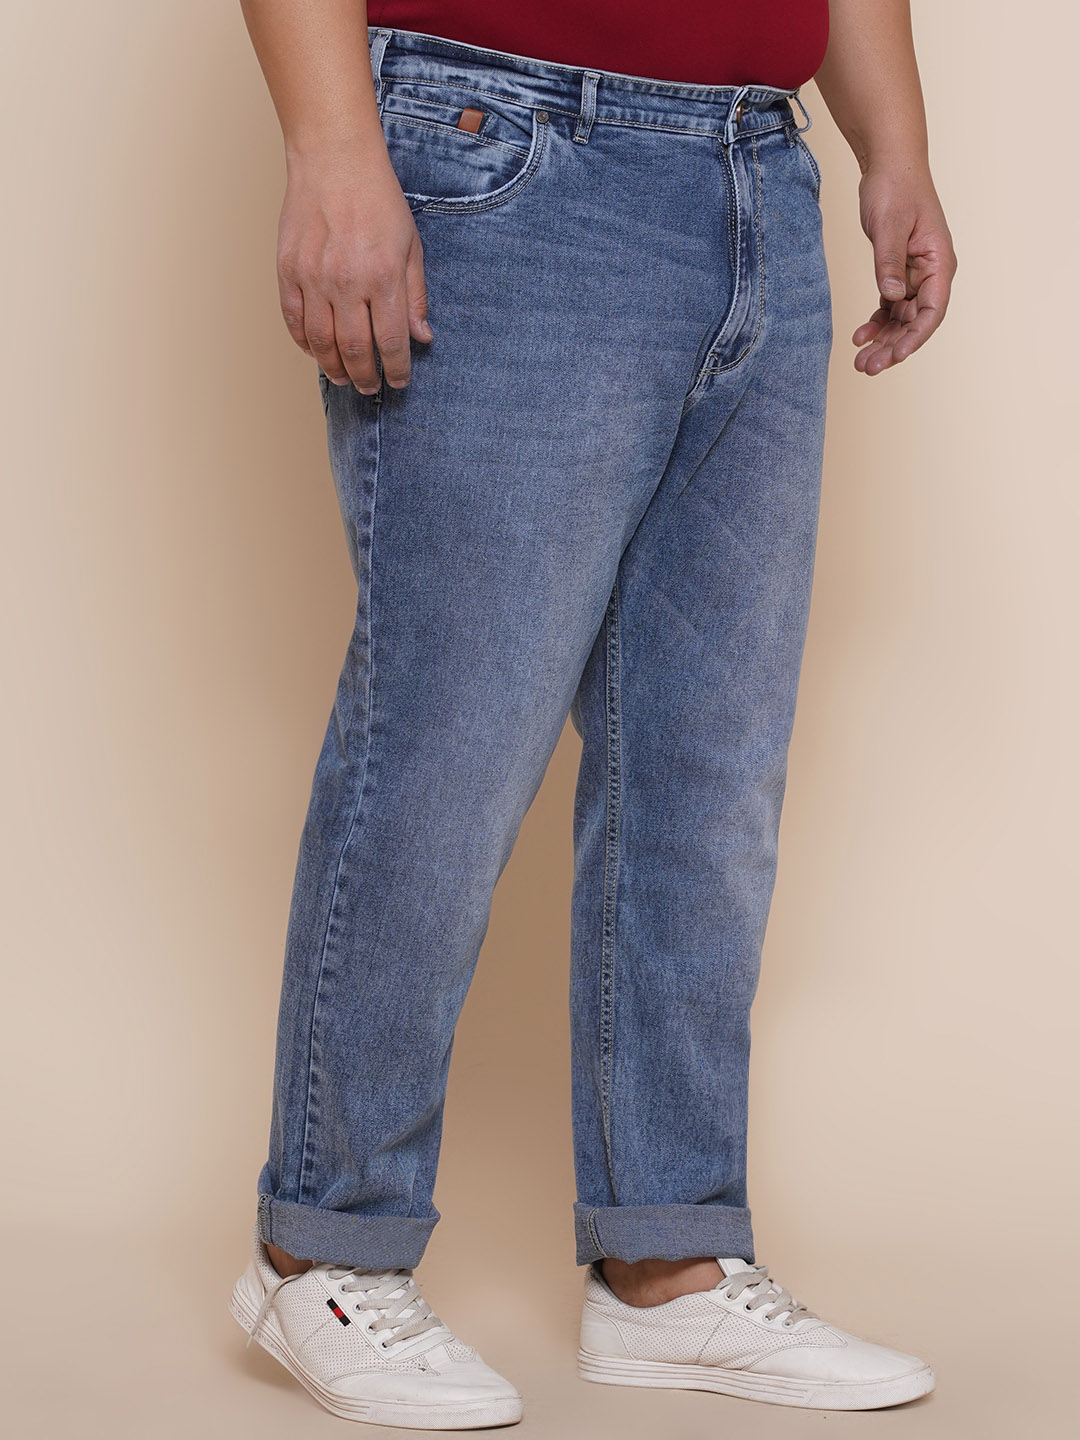 bottomwear/jeans/EJPJ25085/ejpj25085-4.jpg